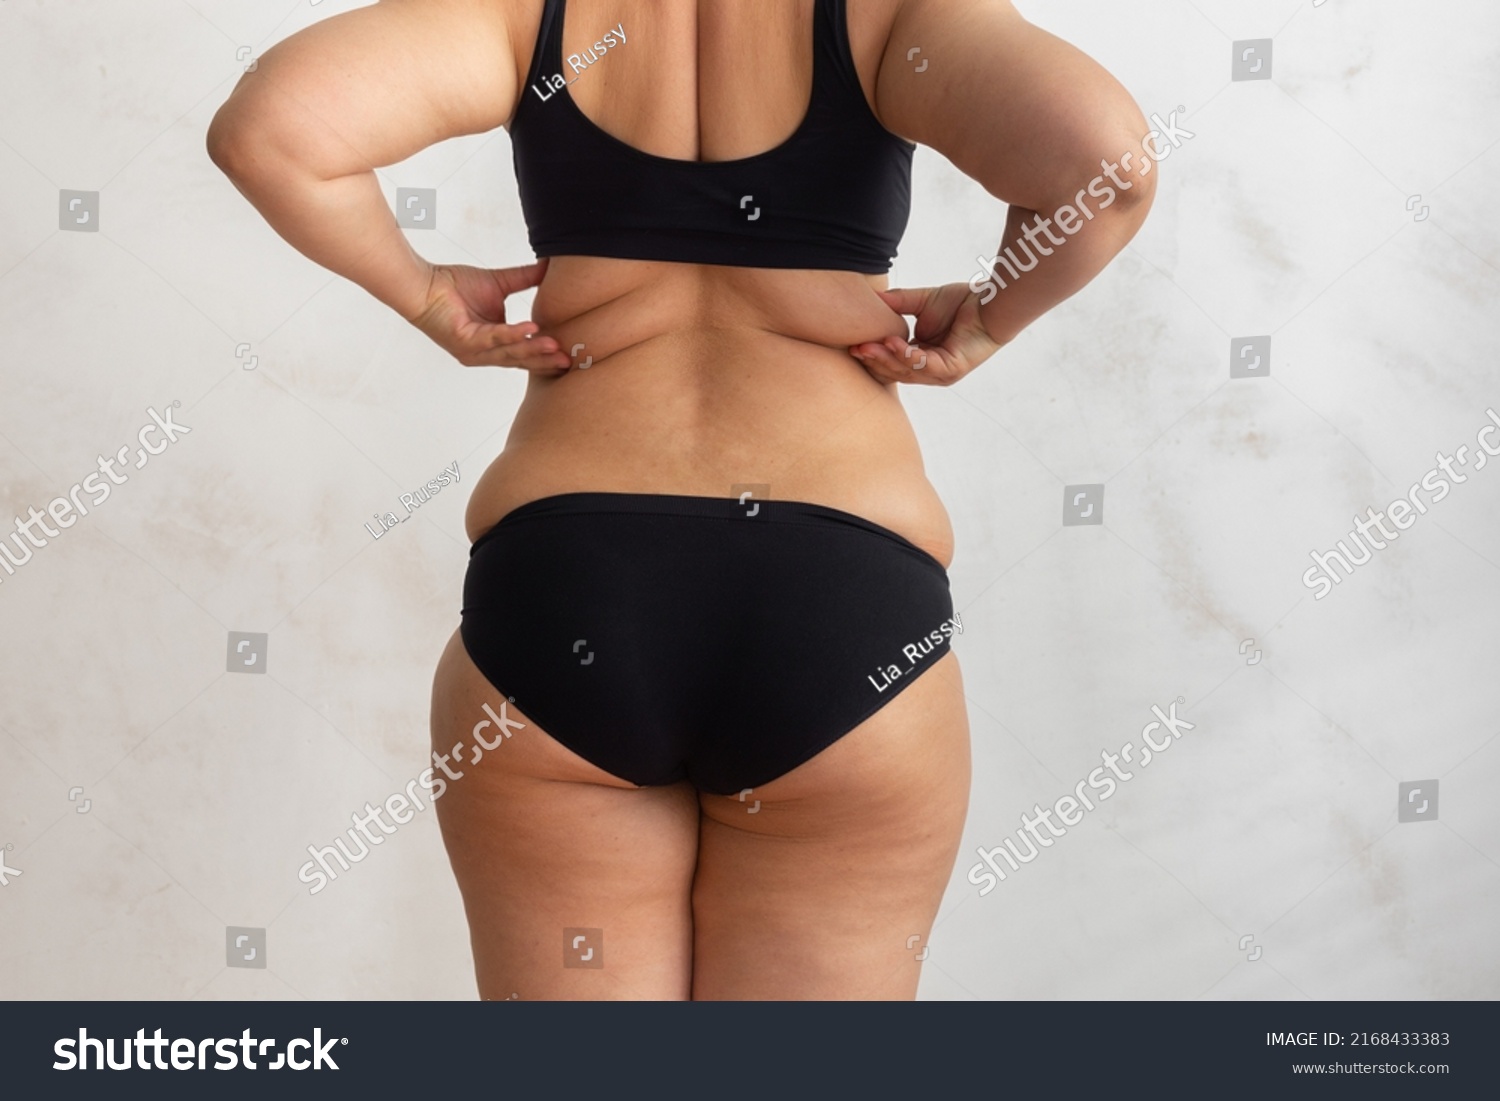 adrian gilligan add photo fat black ass spread